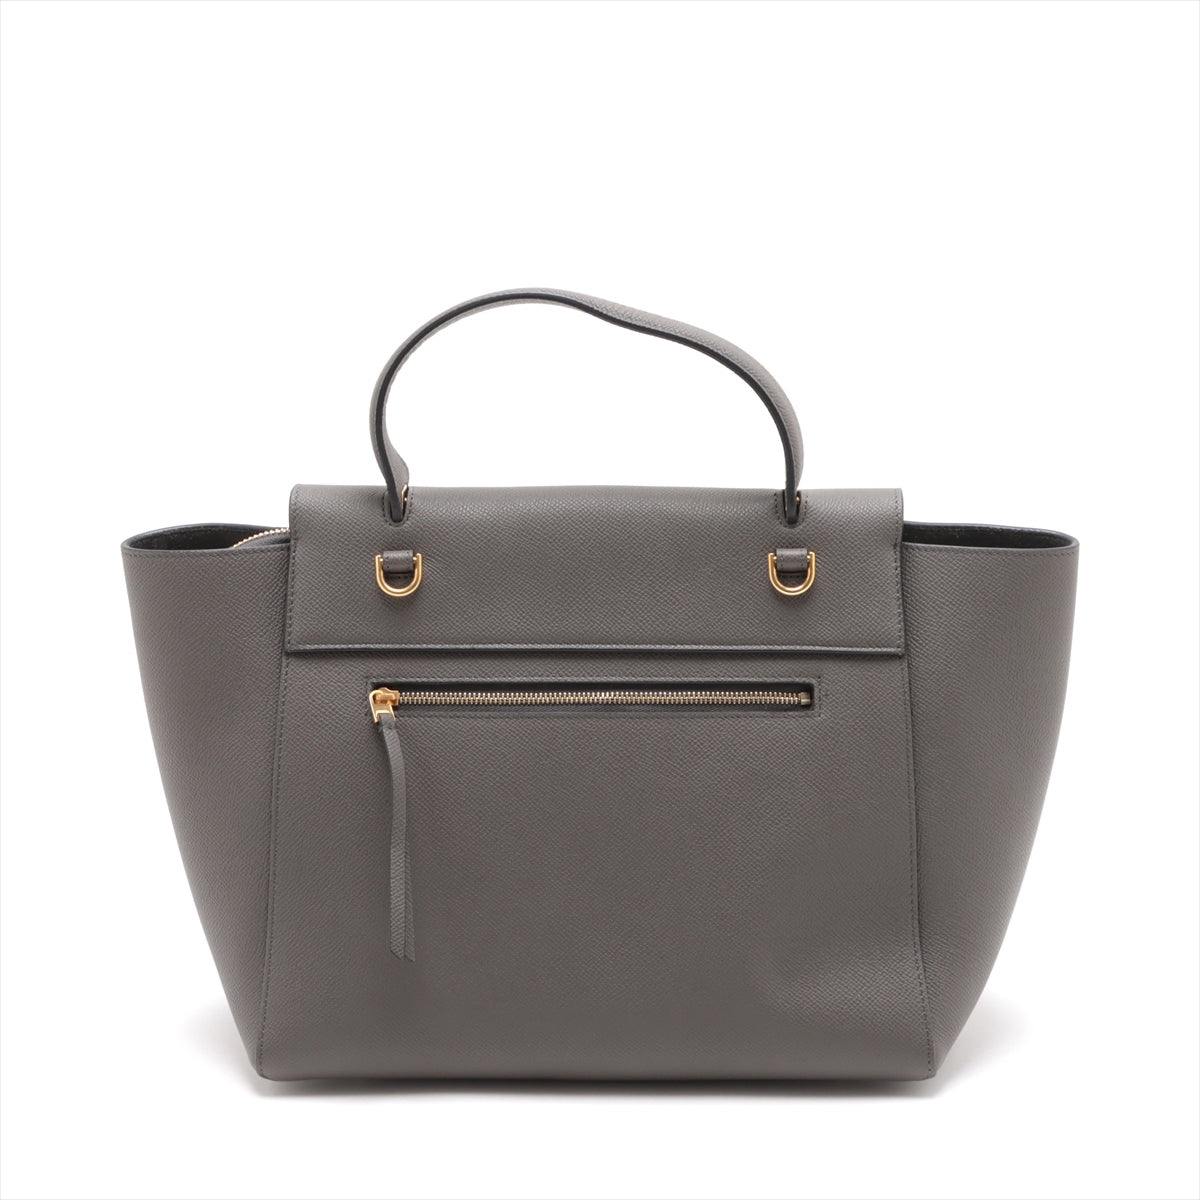 CELINE Belt Bag Leather 2way handbag Grey